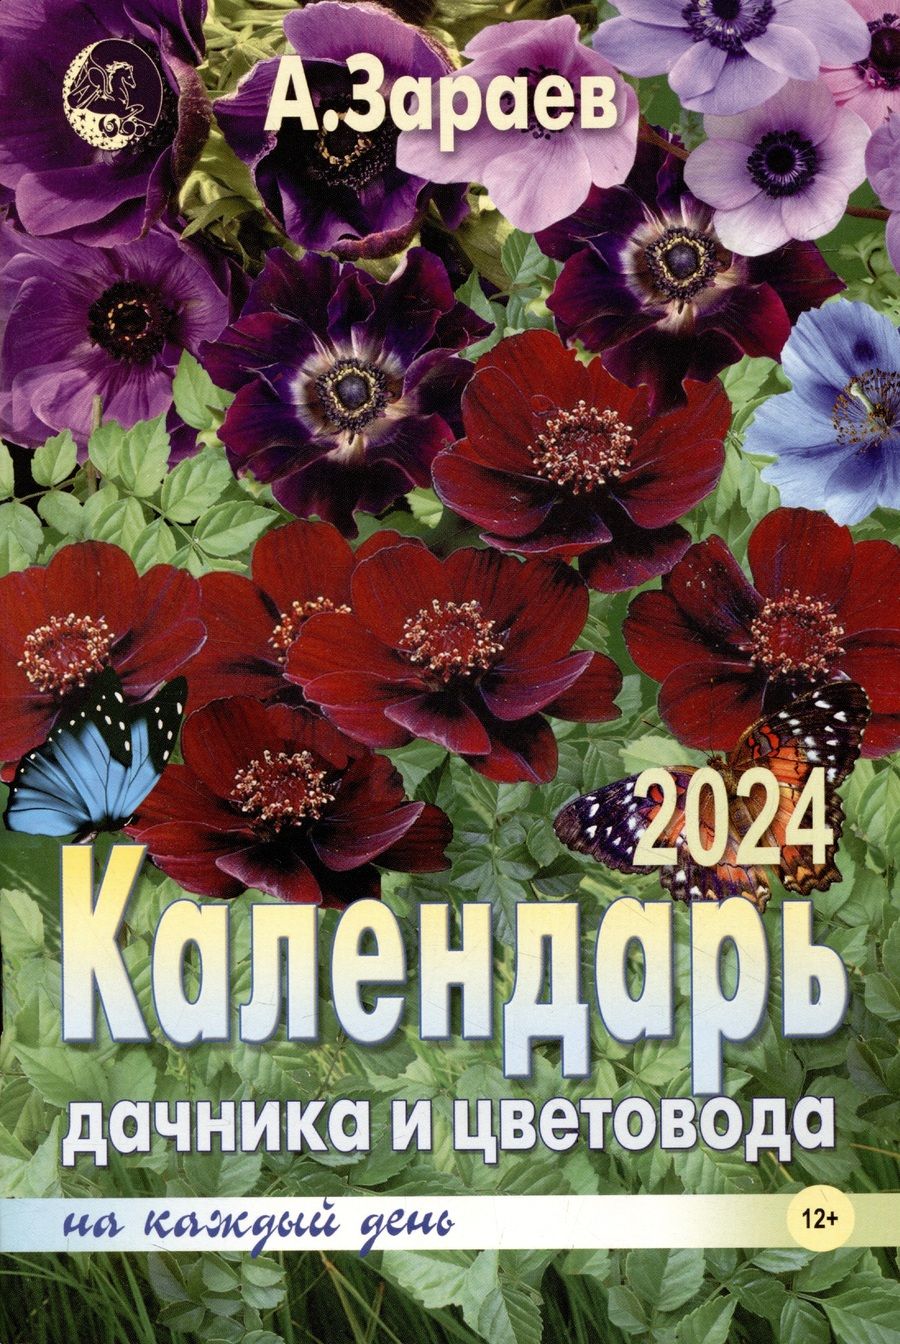 Обложка книги "Зараев: Календарь дачника и цветовода на каждый день 2024 года"